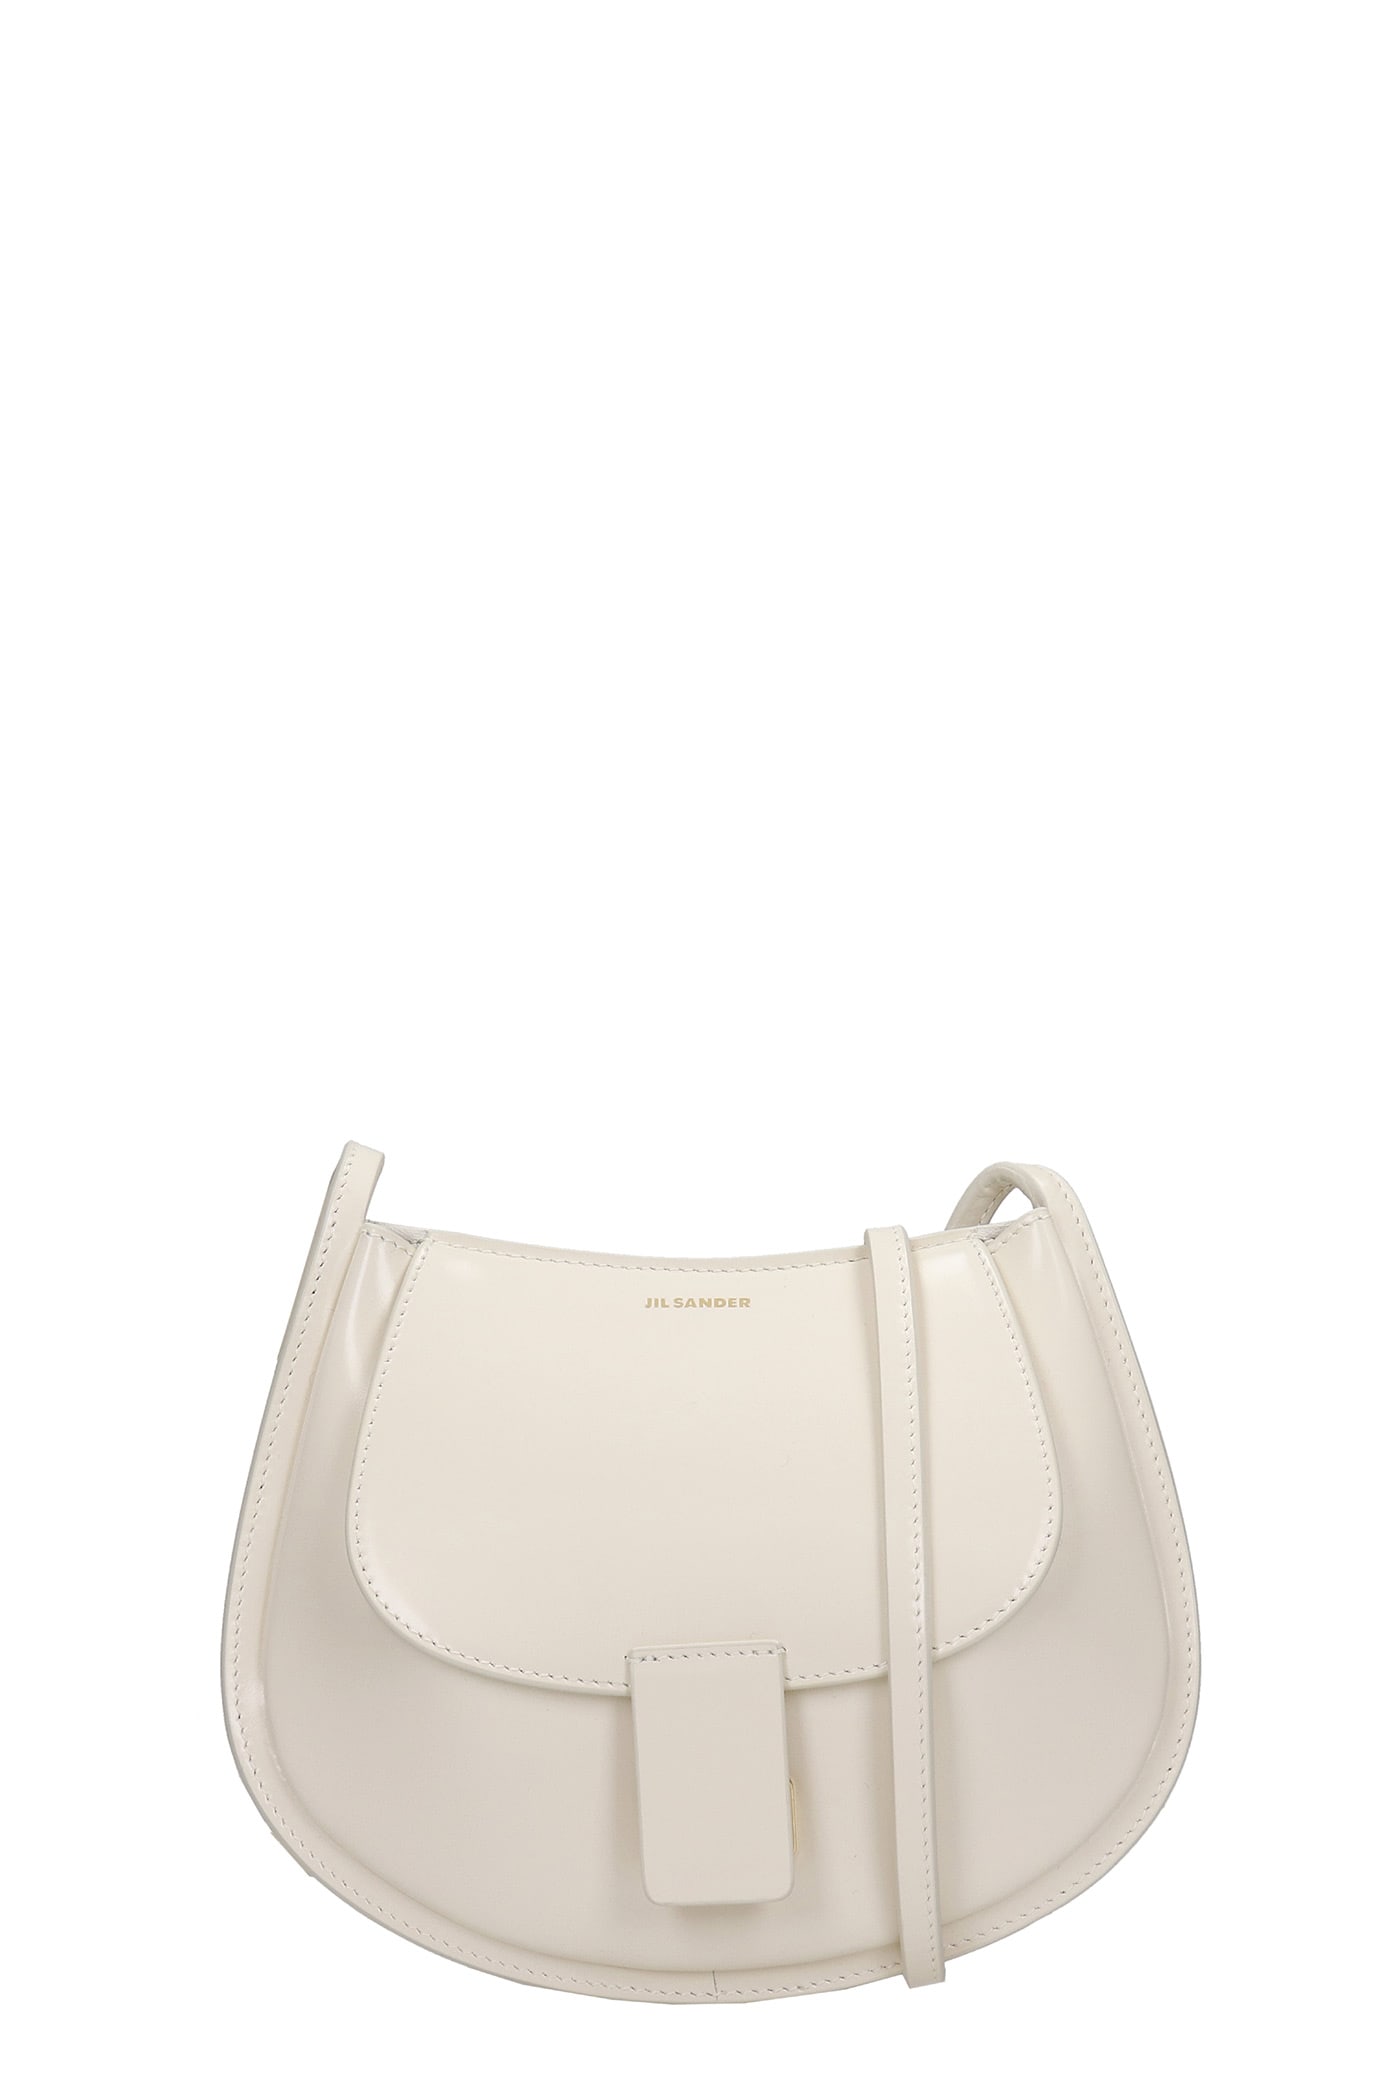 Jil Sander Crescent Mini Shoulder Bag In White Leather